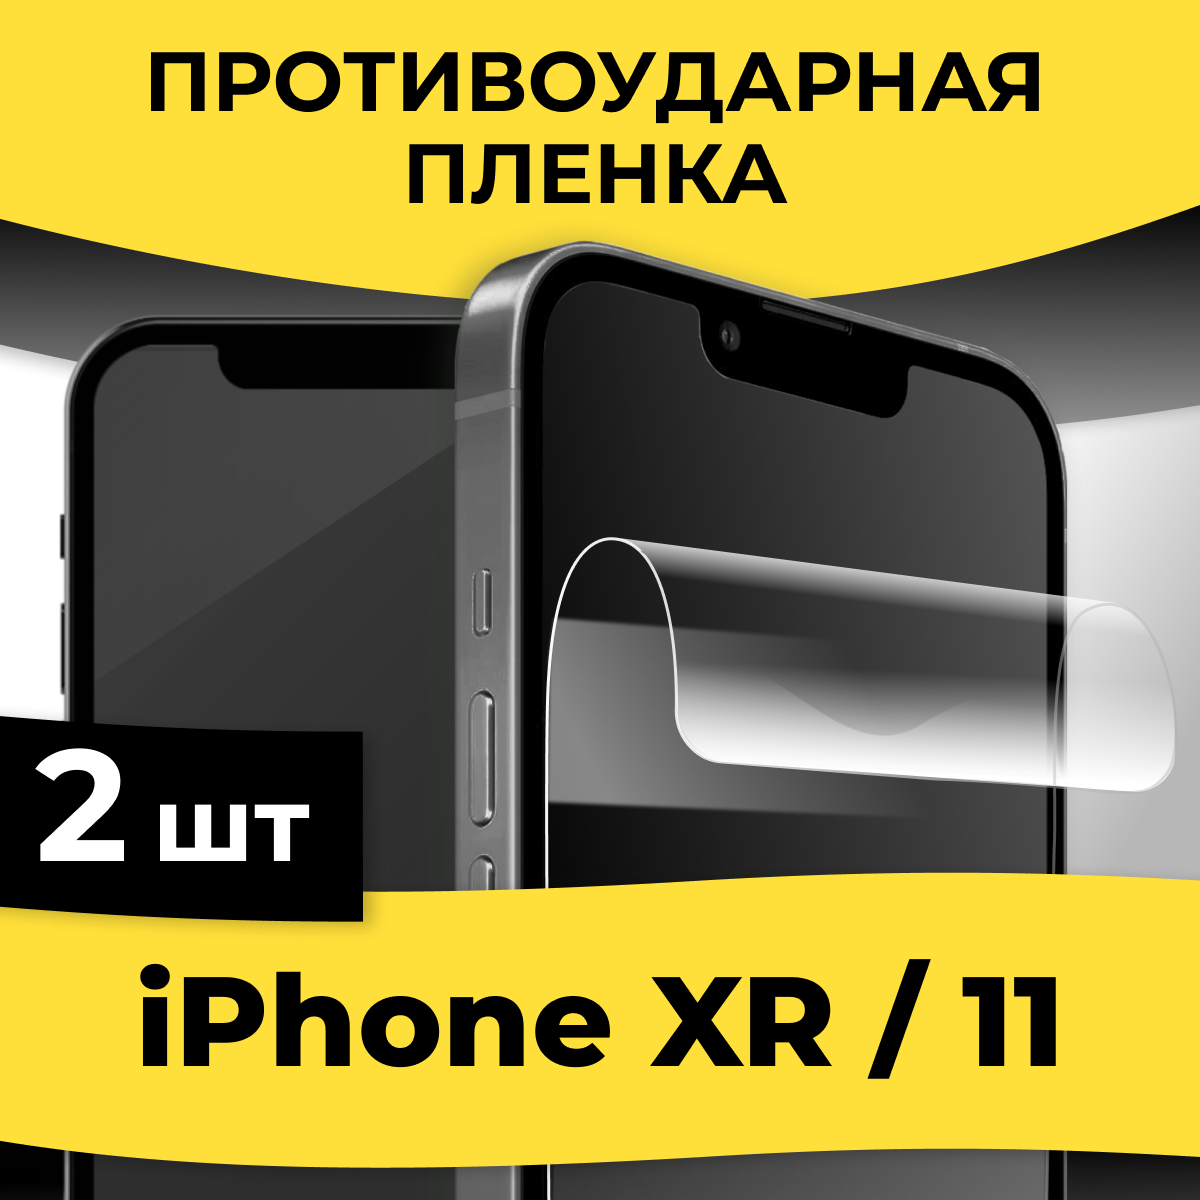 Гидрогелевая пленка для смартфона Apple iPhone XR / 11 / Защитная пленка на телефон Эпл Айфон ХР / 11 / Глянцевая пленка